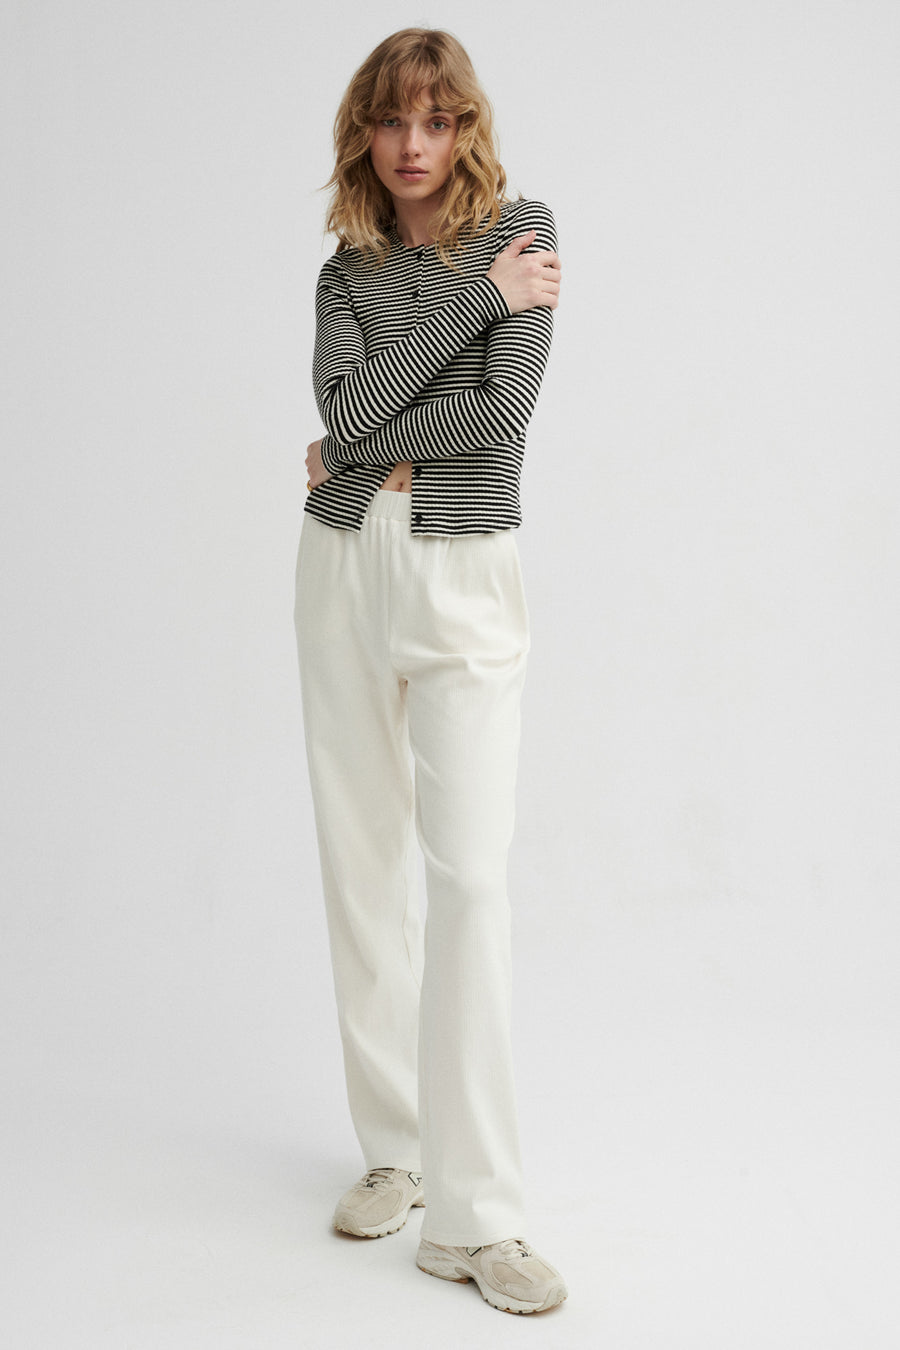 Spodnie z bawełny organicznej / 04 / 14 / cream white PRE-ORDER*longsleeve-z-bawelny-14-25-black-stripes* ?Modelka ma 179cm wzrostu i prezentuje rozmiar XS?